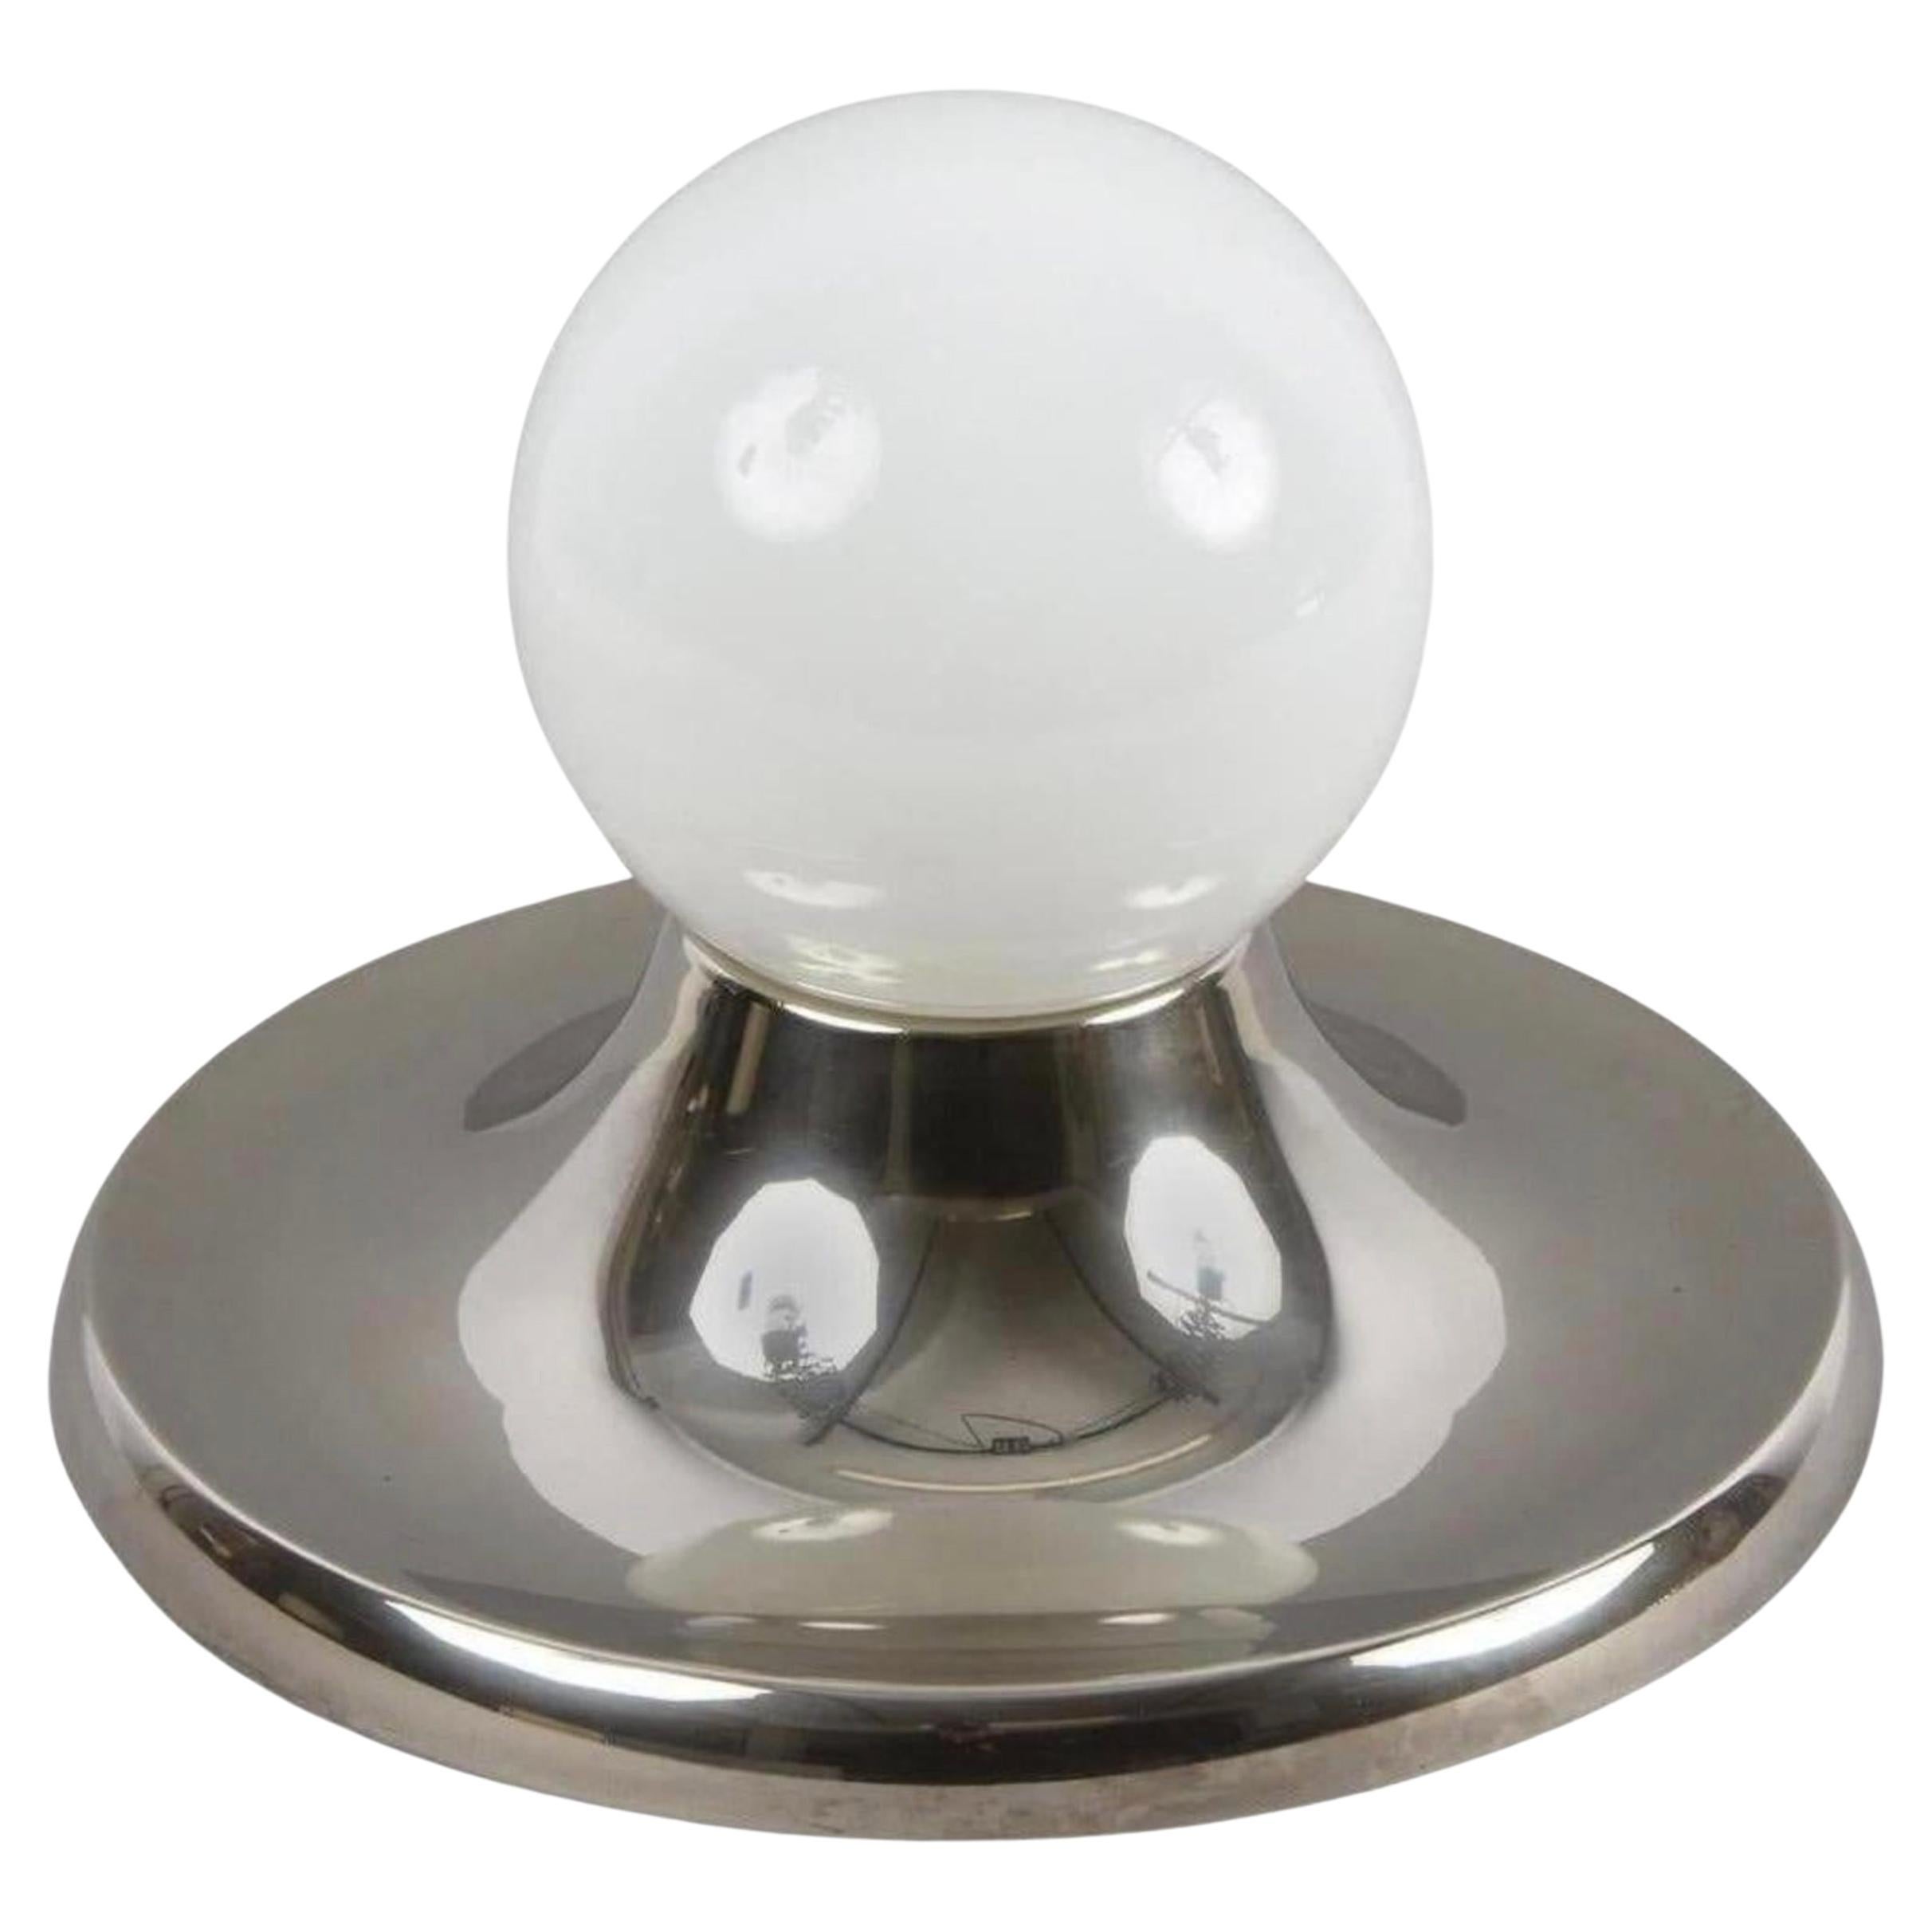 Amazing mid-century 'Light Ball' sconce métal chromé et verre opalin pour Flos. Cet article fantastique a été conçu par Achille Castiglioni et fabriqué en Italie pour Flos dans les années 1960. 

Cette pièce étonnante est unique de par ses